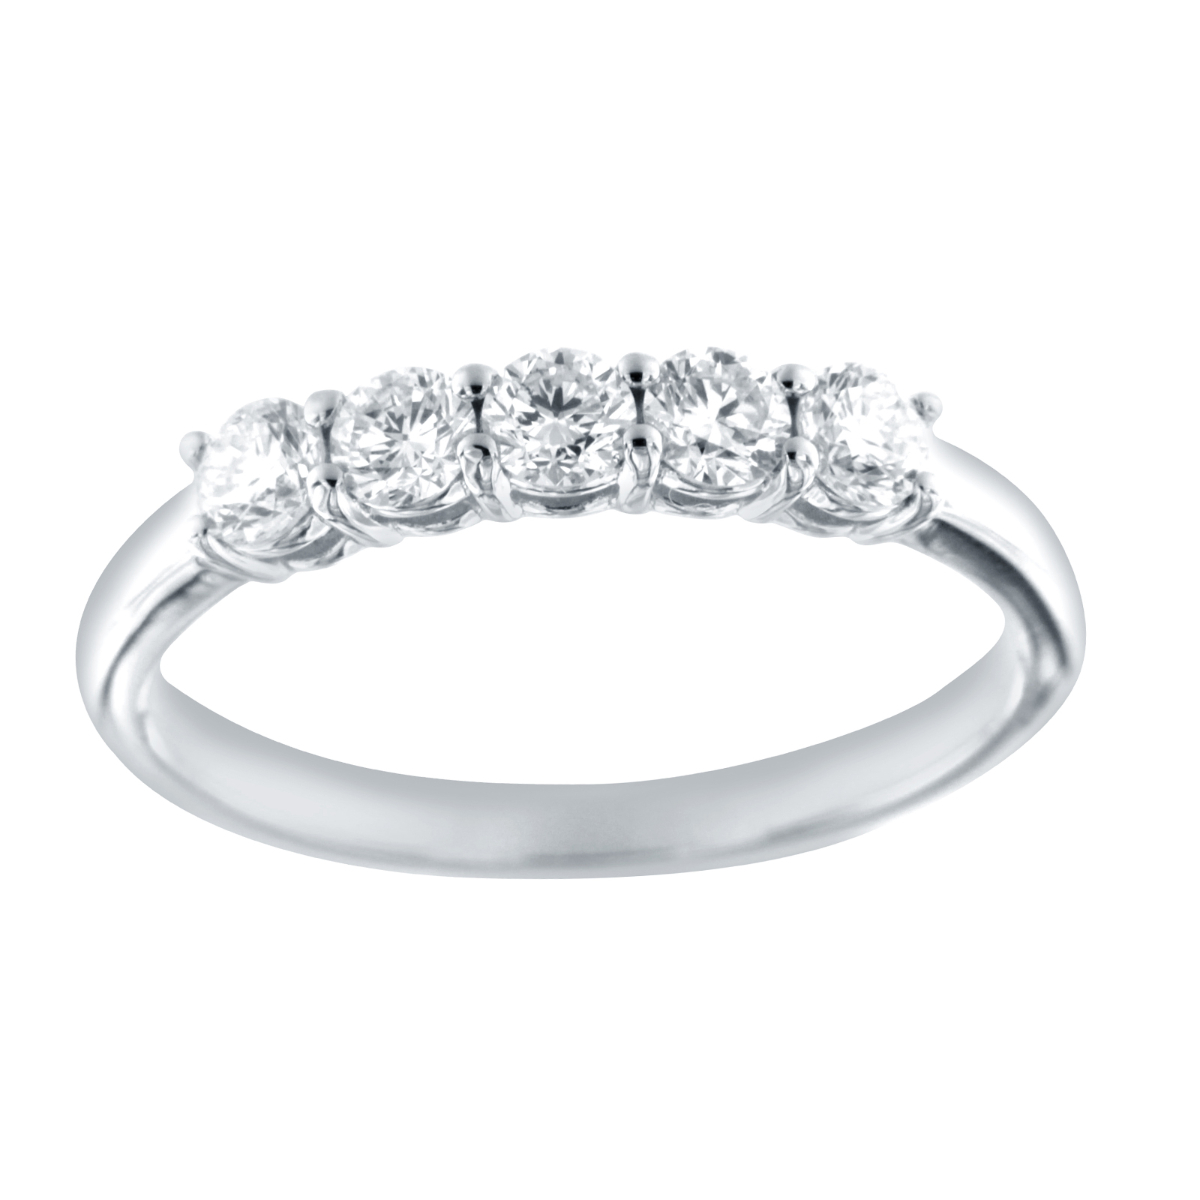 R35942WHT – 18K White Gold Diamond Ring, 0.56 TCW